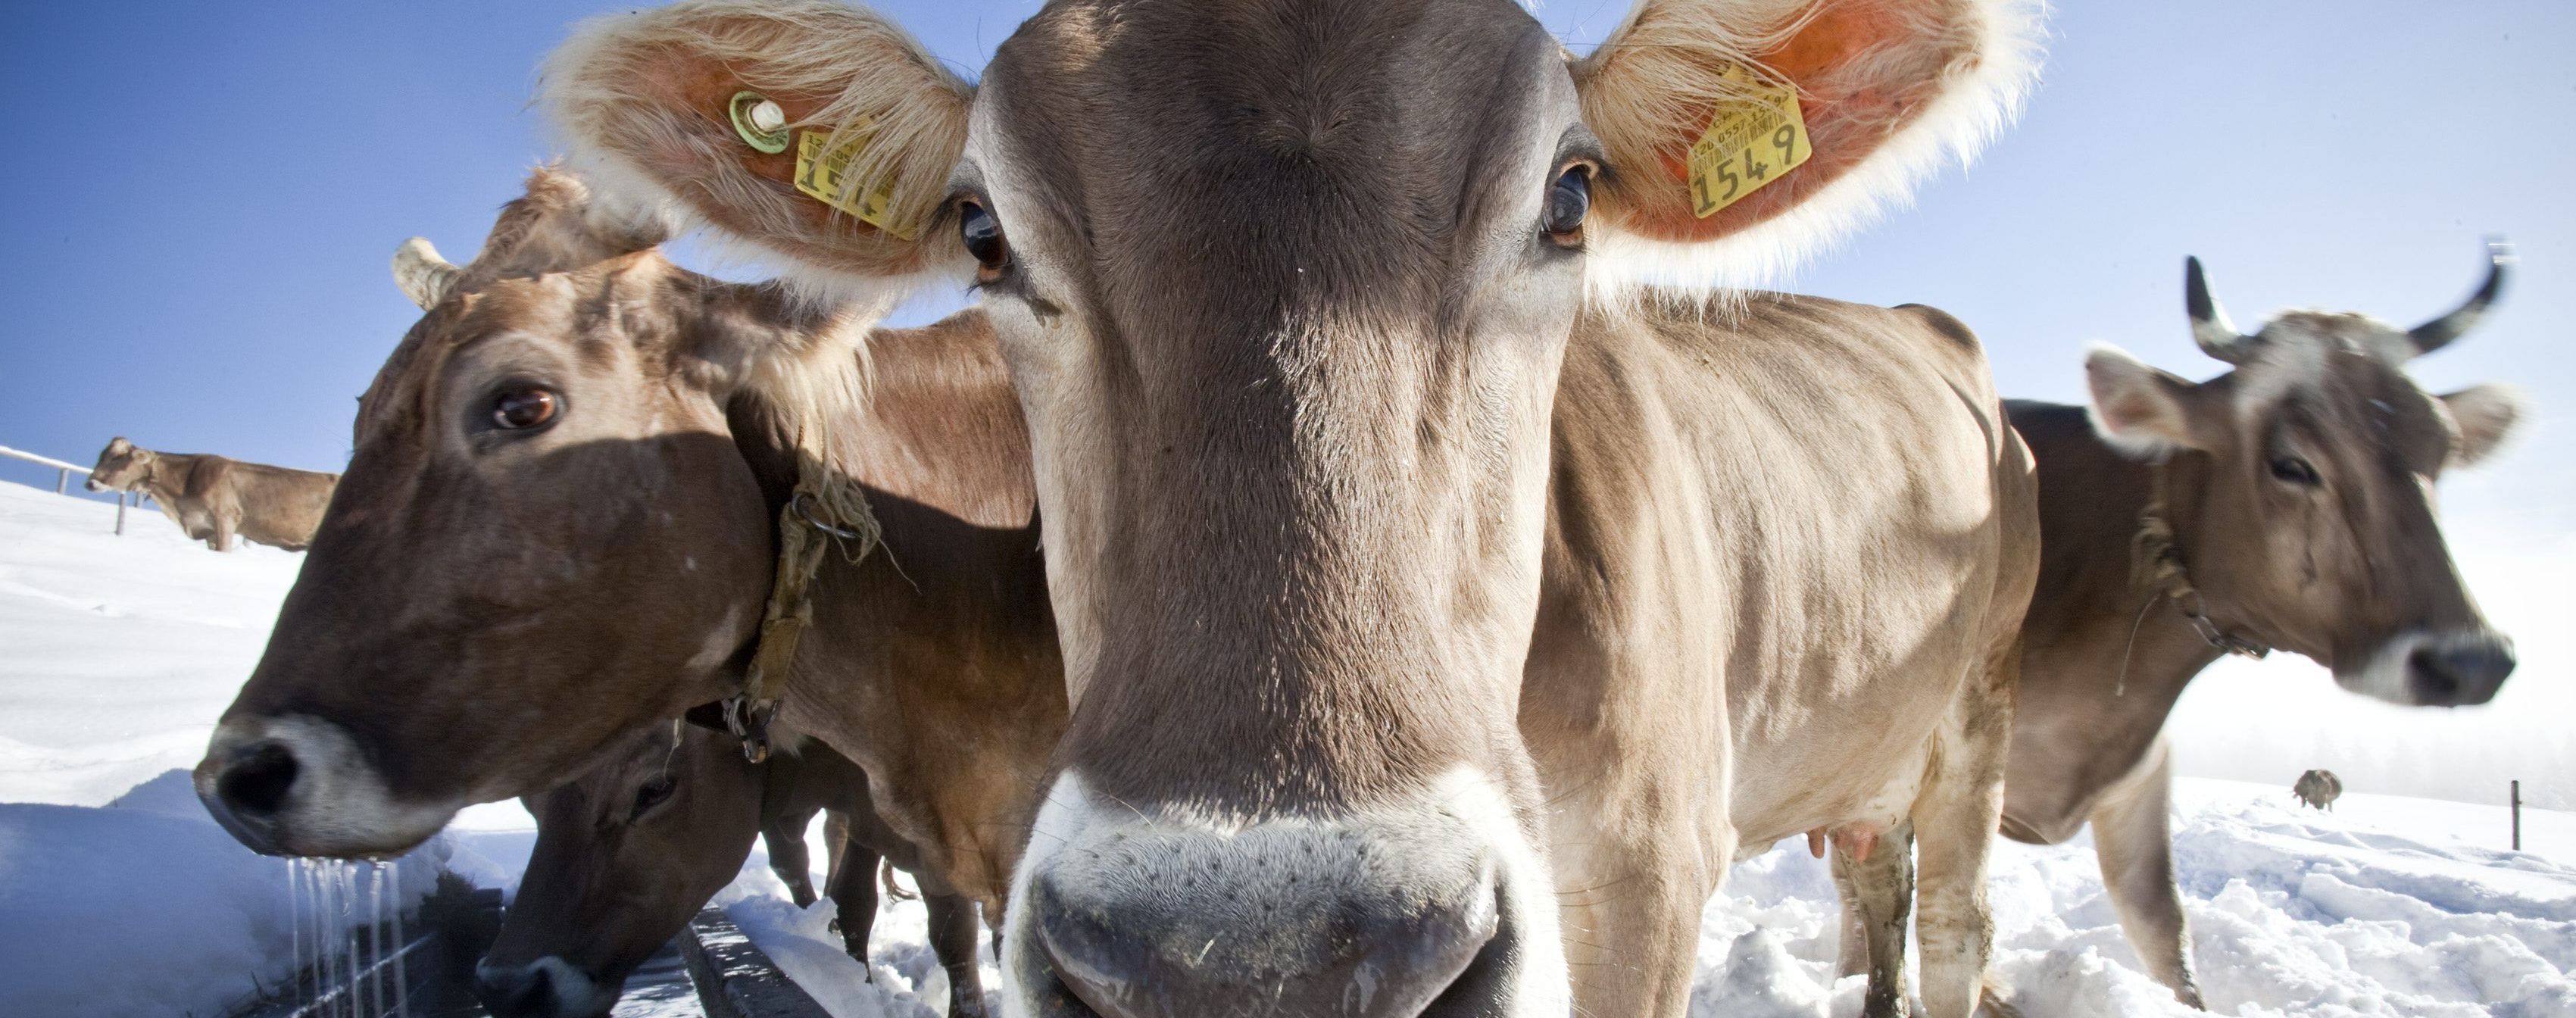 В Британии появился Tinder для коров. Фермеры в восторге